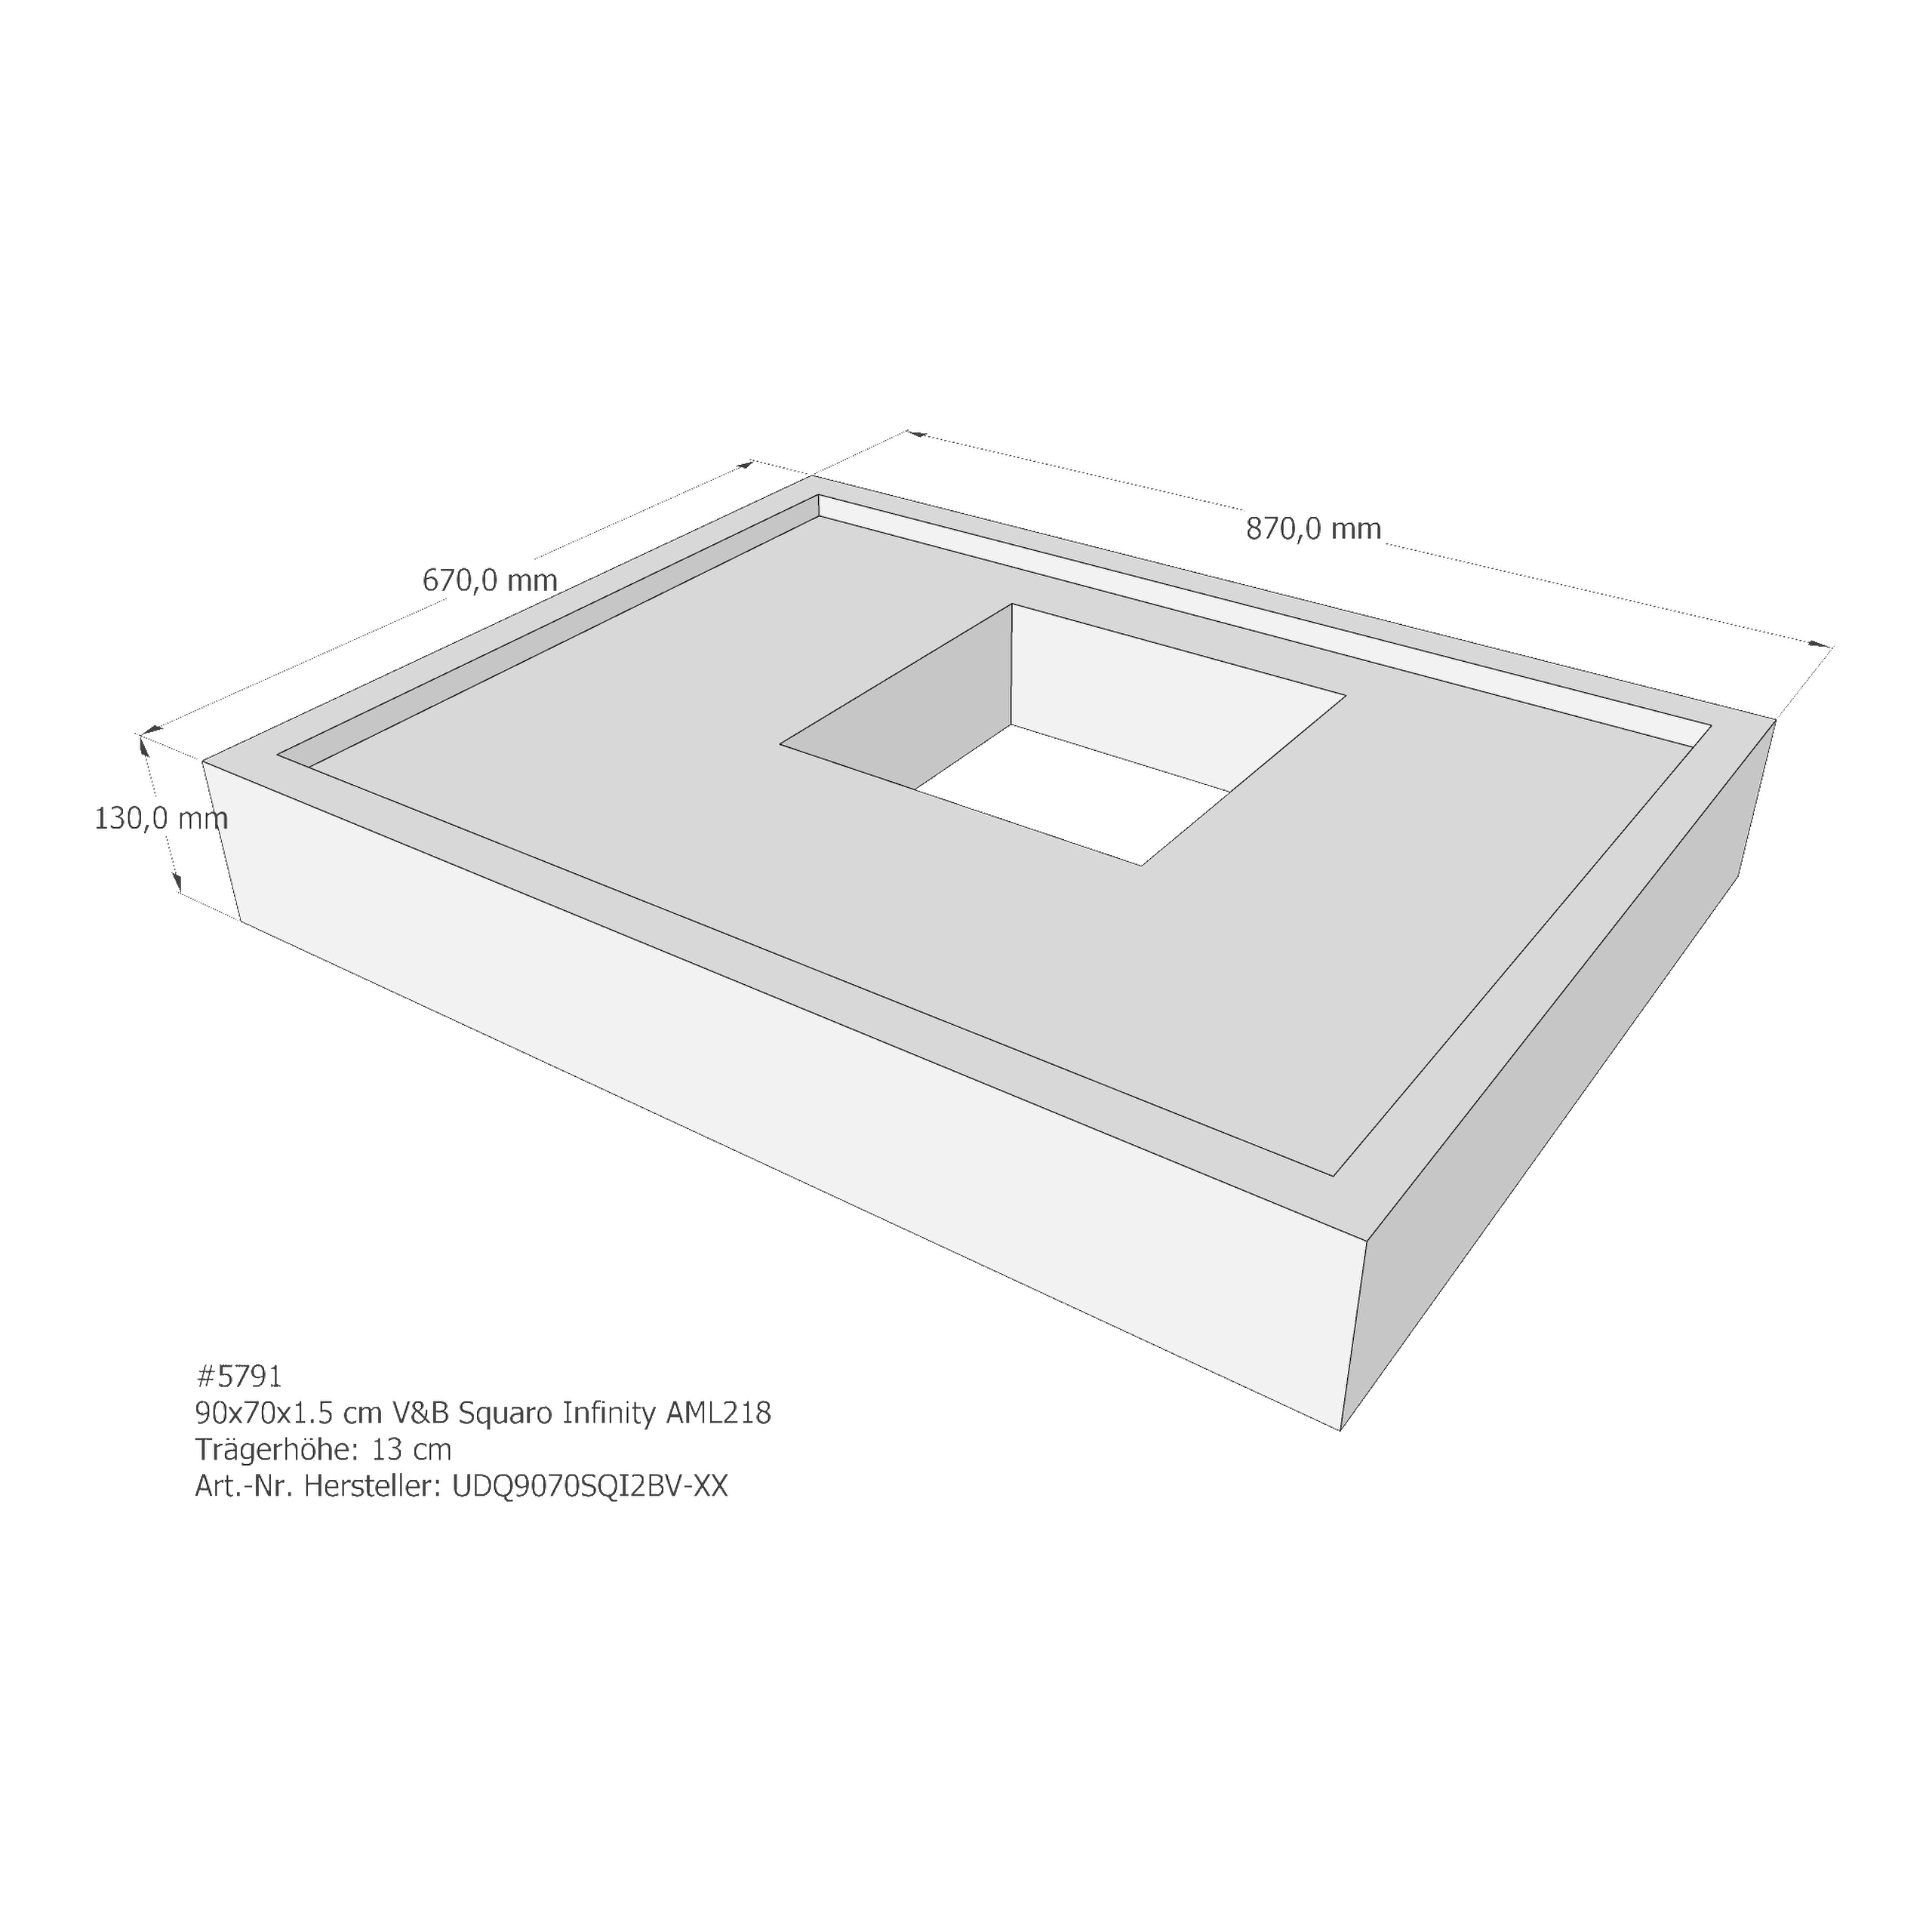 Duschwannenträger für Villeroy & Boch Squaro Infinity 90 × 70 × 1,5 cm